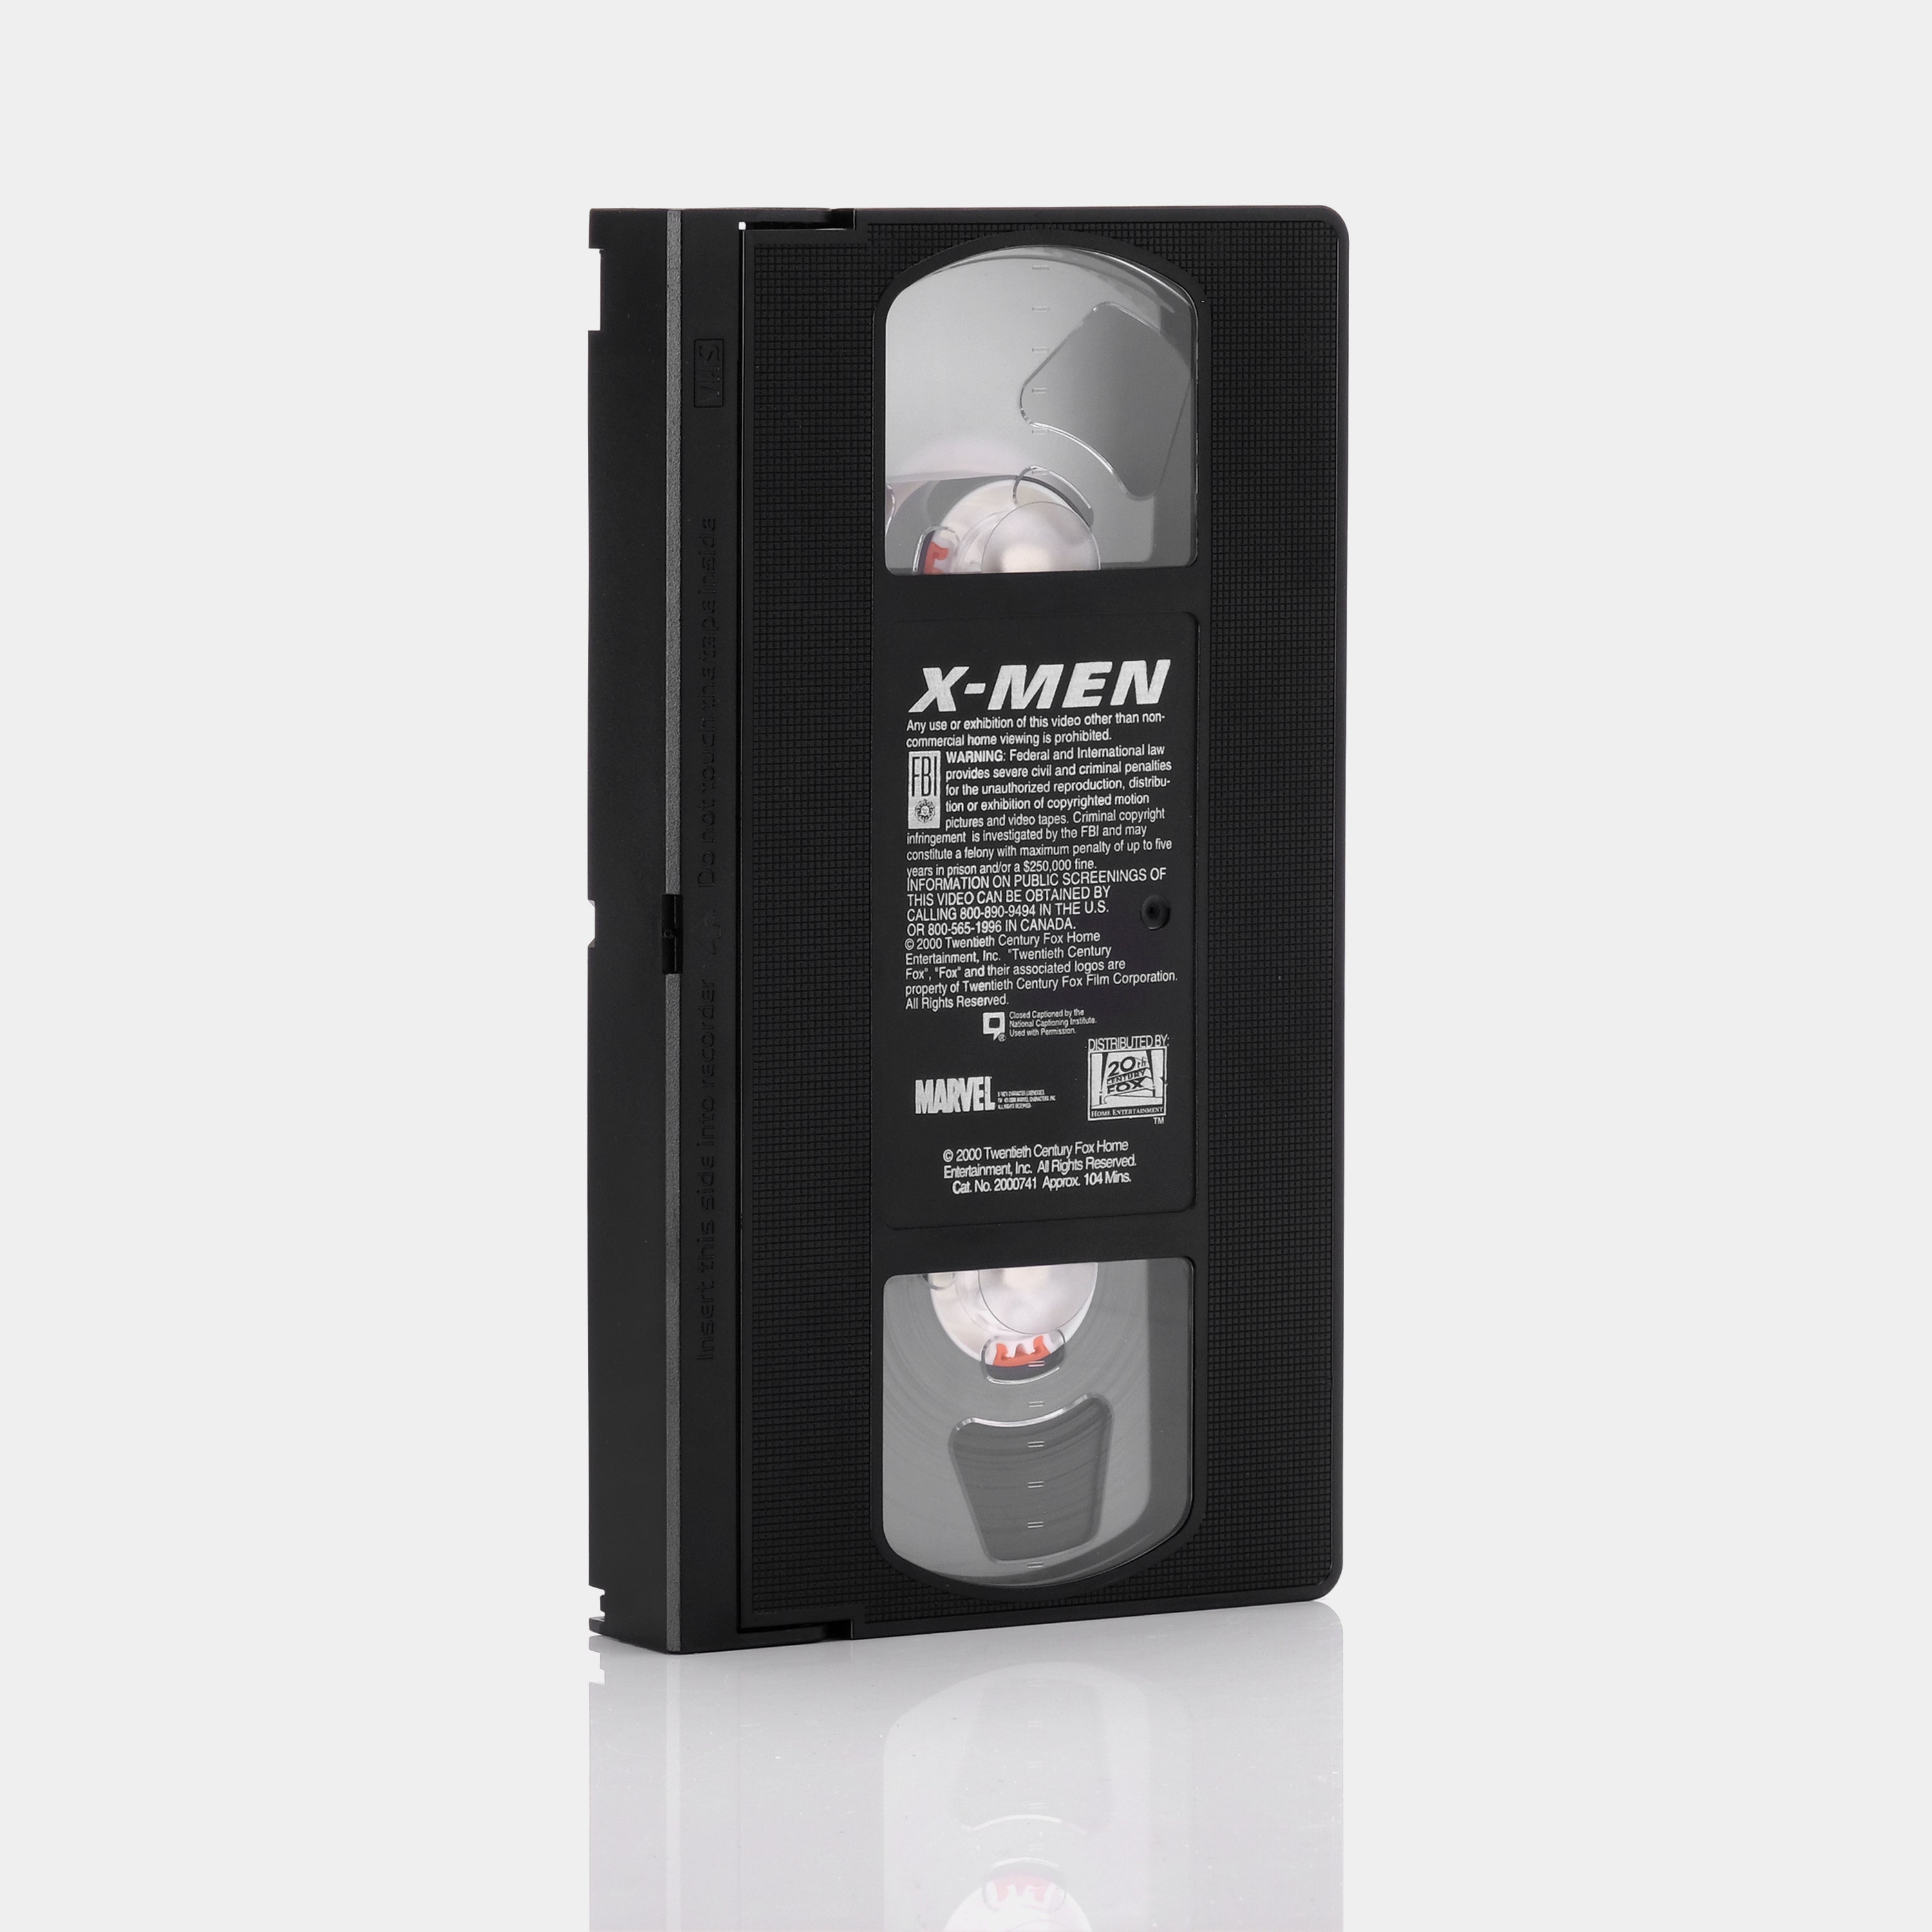 X-Men VHS Tape